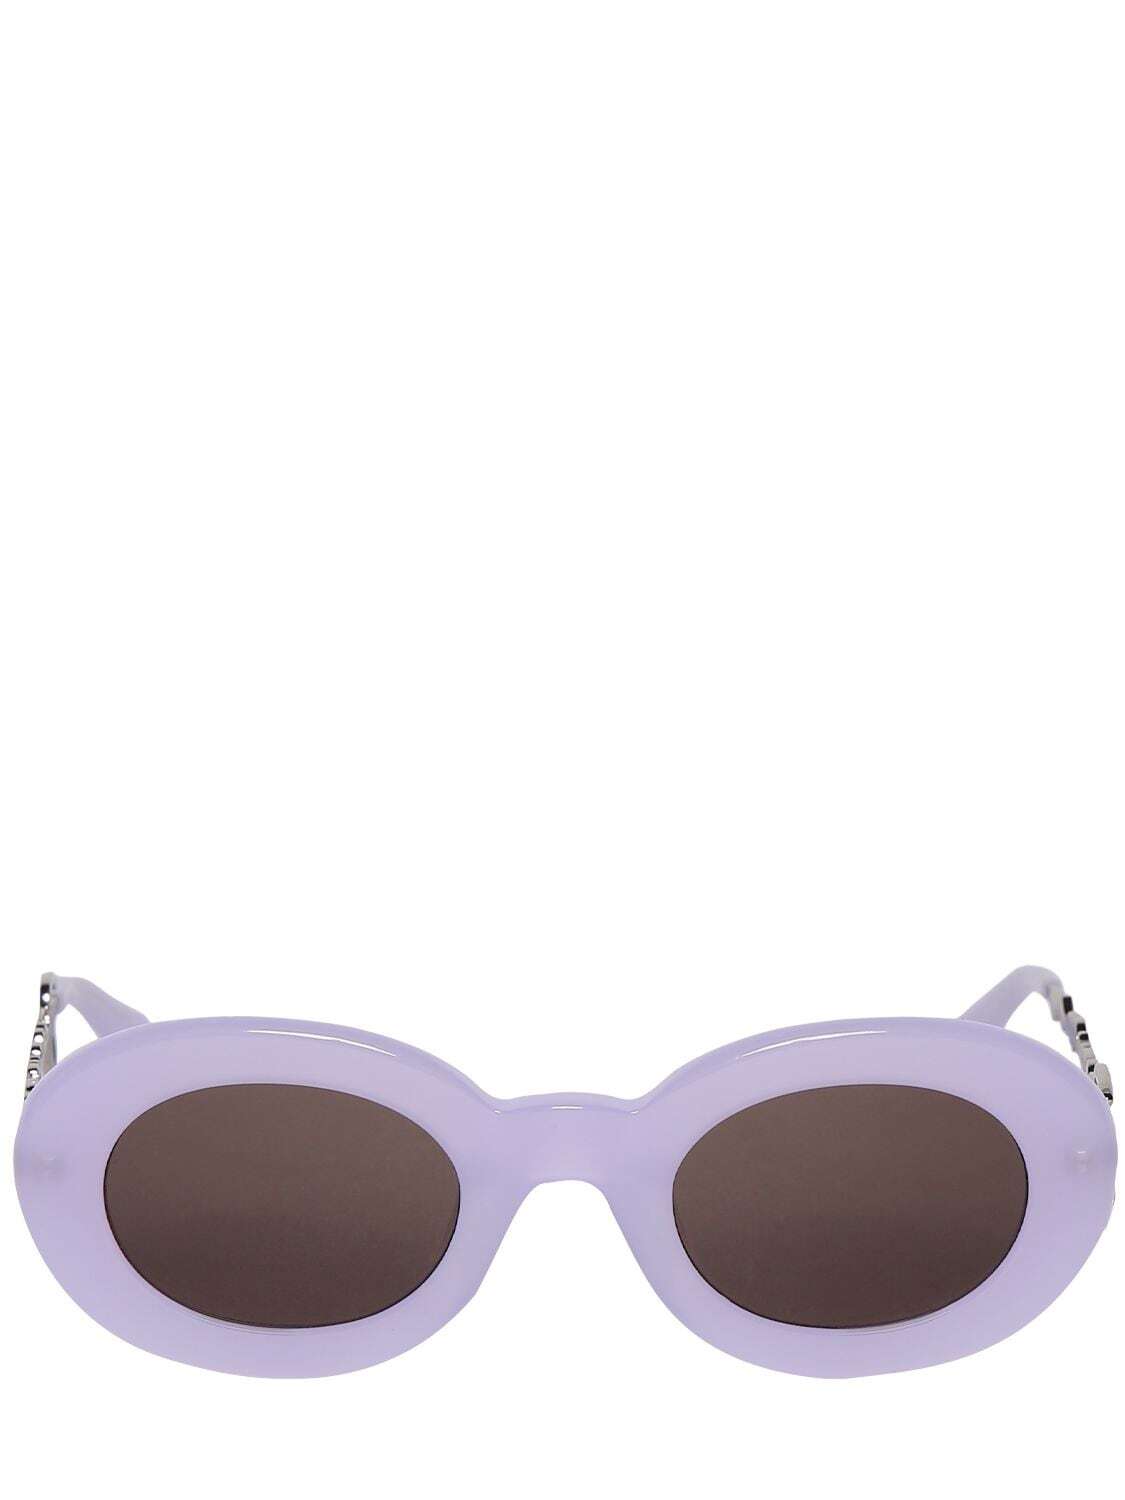 JACQUEMUS Les Lunettes Pralu Sunglasses in grey / purple